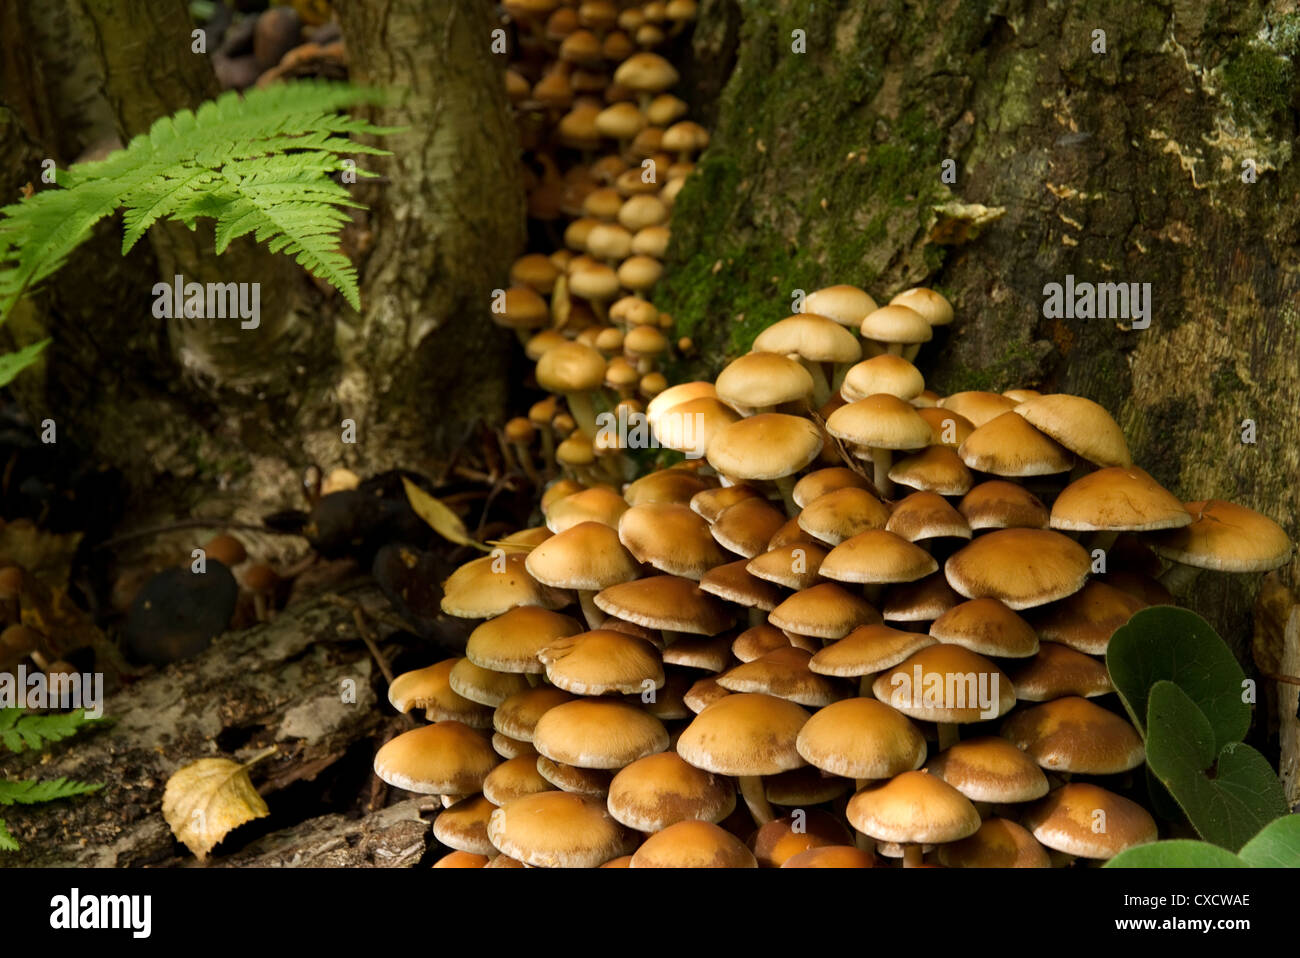 large group of autumn mushrooms on the tree stump Stock Photo